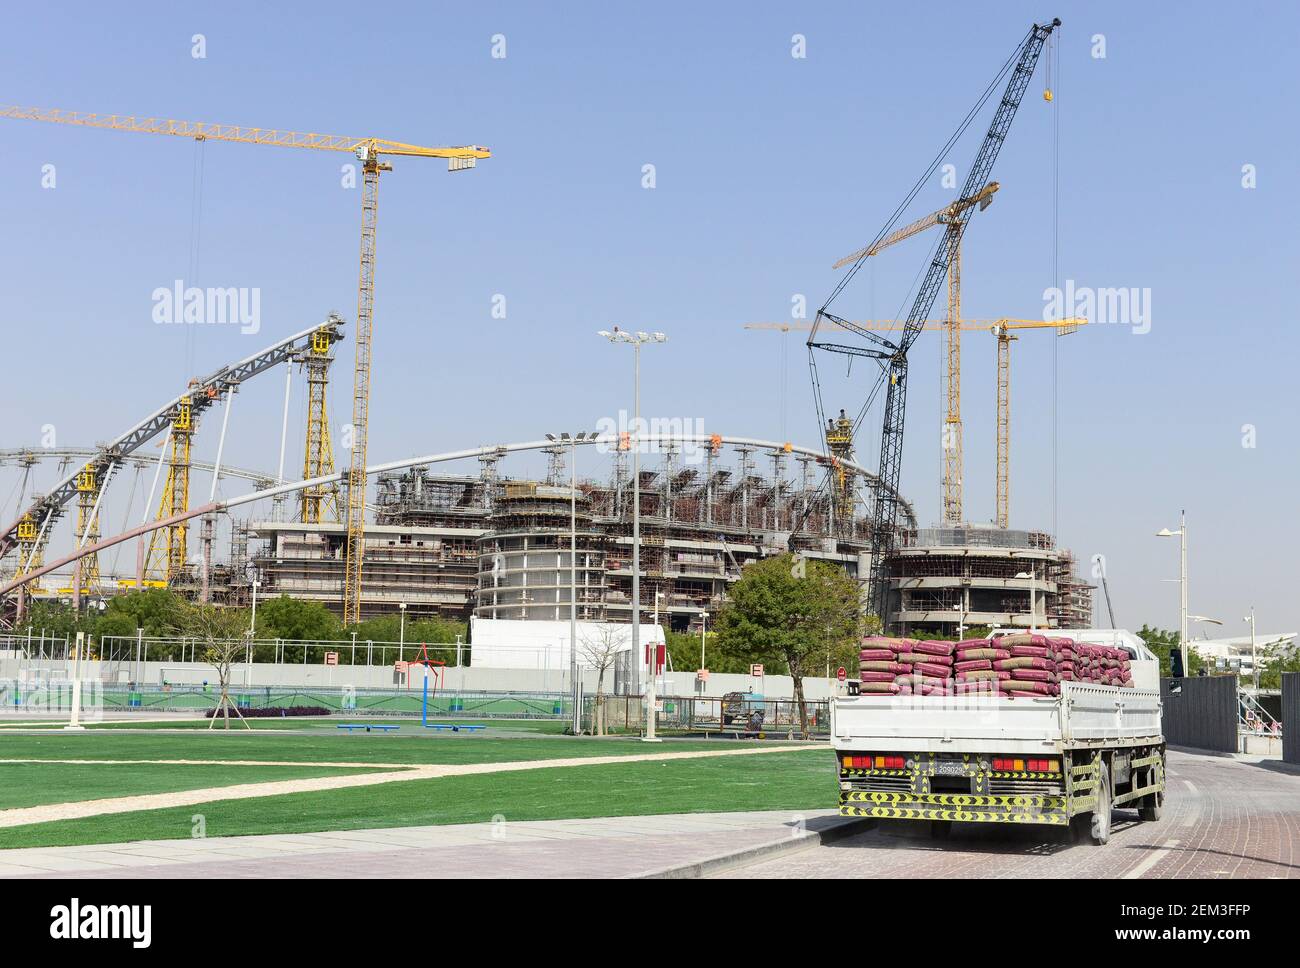 QATAR, Doha, lugar de construcción Estadio Internacional Khalifa para la Copa Mundial de la FIFA 2022, construido por contratista midmac y contrato de sextos / KATAR, Doha, Baustelle Khalifa International Stadium fuer die FIFA Fussballweltmeisterschaft 2022, LKW mit Zement Foto de stock